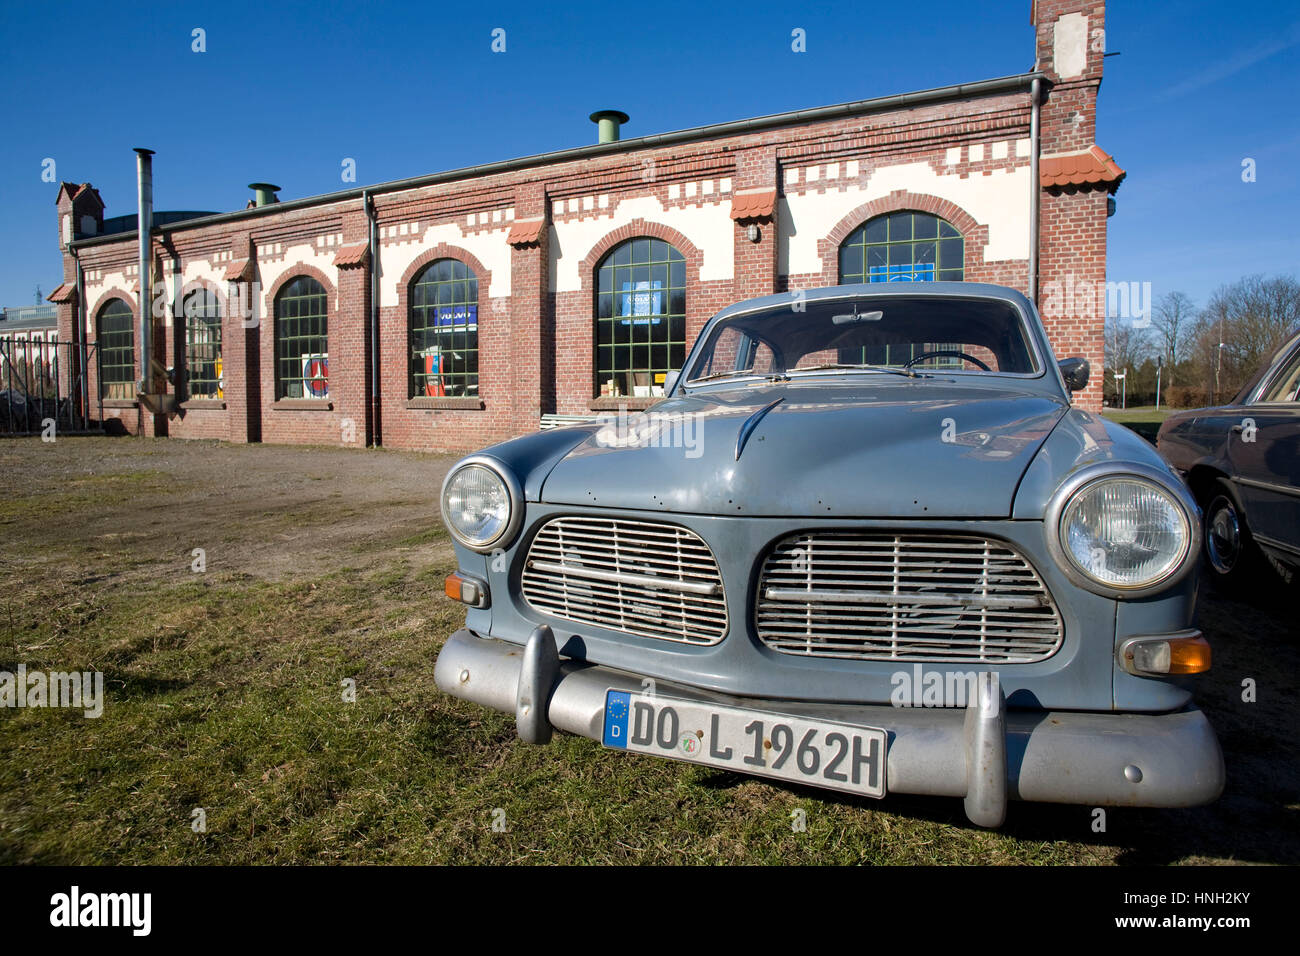 Volvo amazon immagini e fotografie stock ad alta risoluzione - Alamy